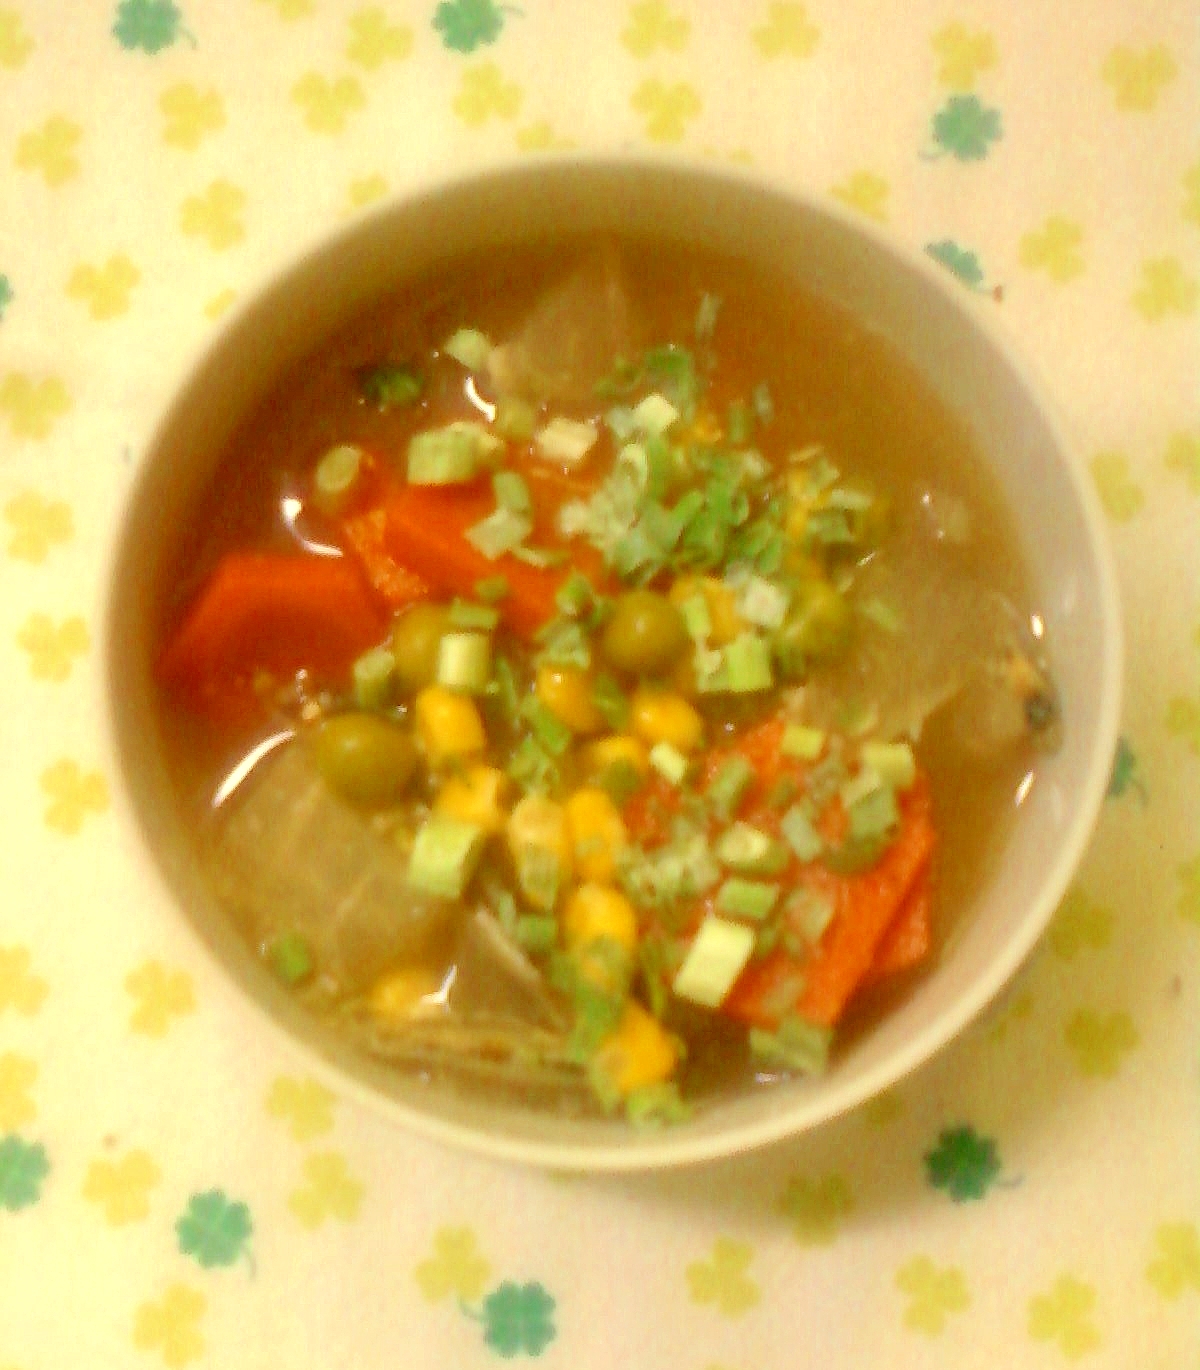 ☆・★野菜と小魚の塩麹スープ☆。.:*:・'゜★ 